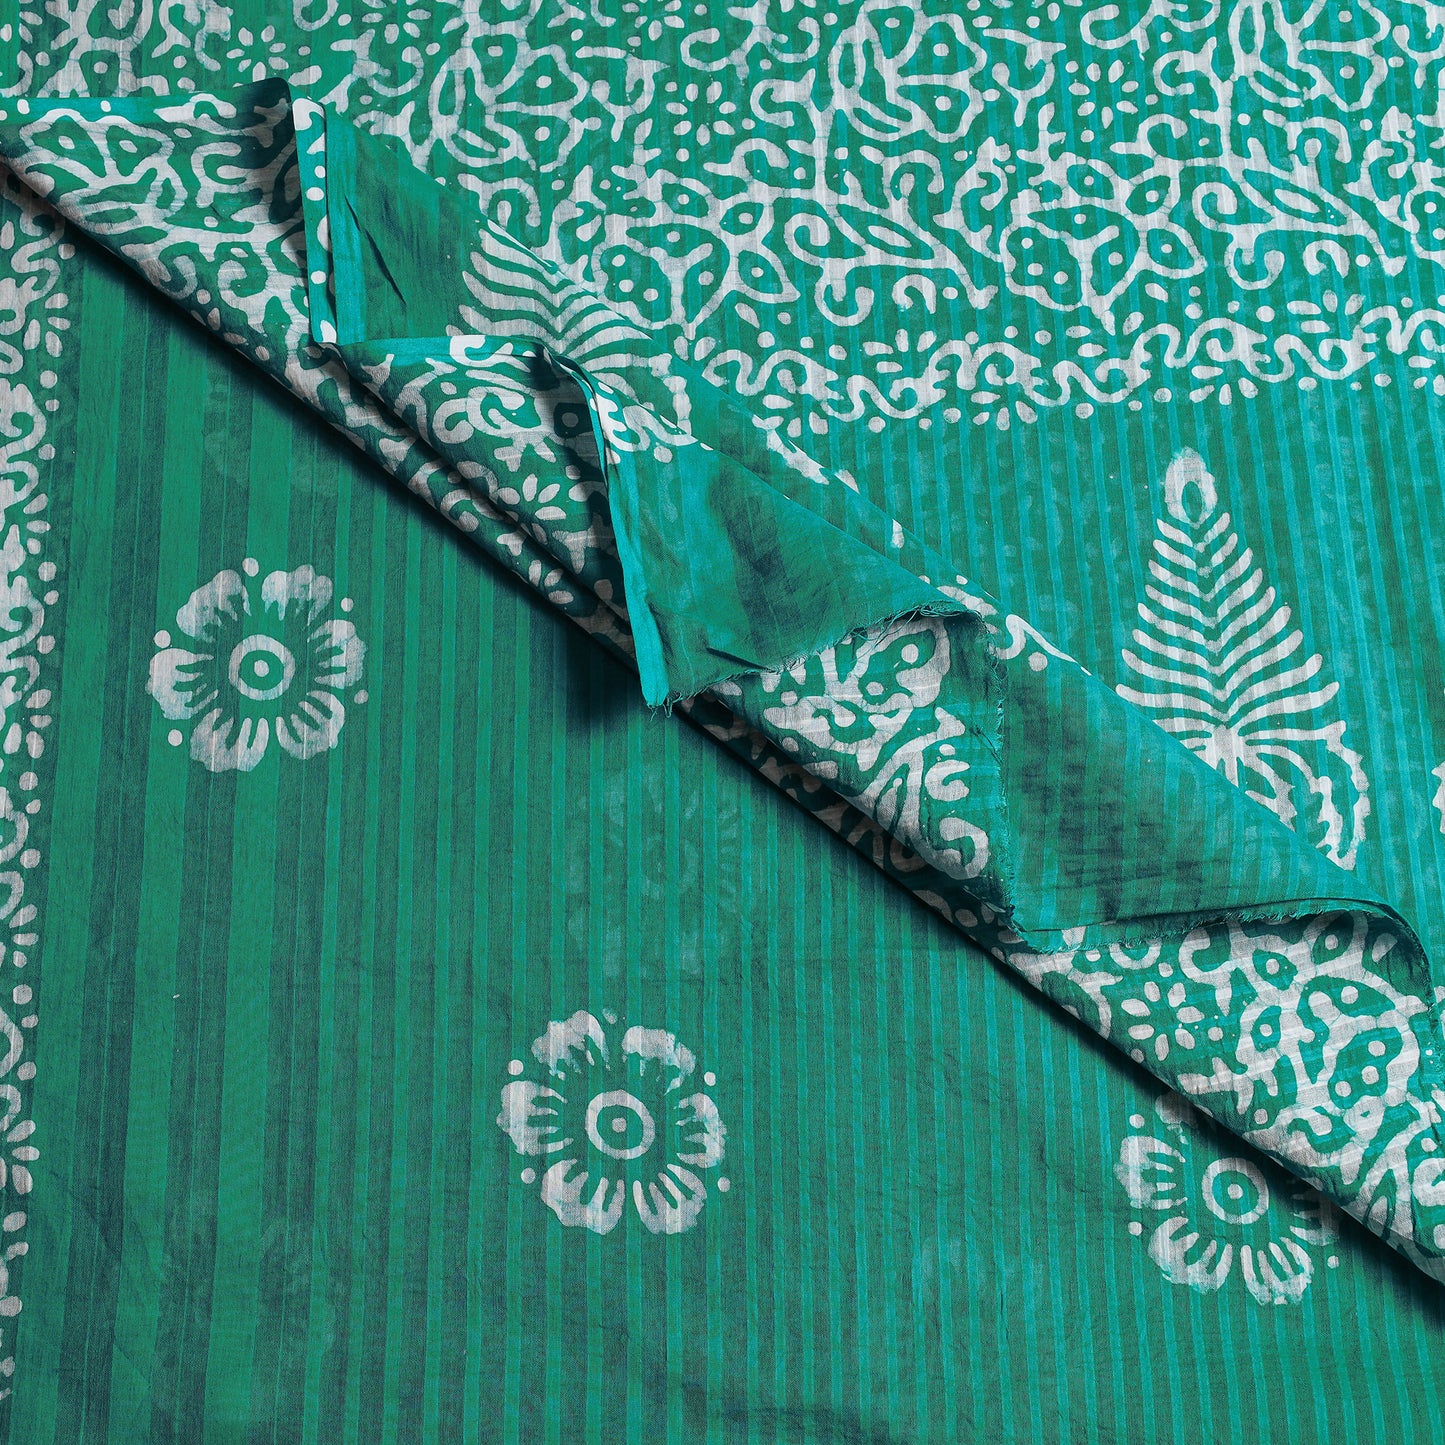 Green - Hand Batik Printed Cotton Saree with Blouse Piece 65